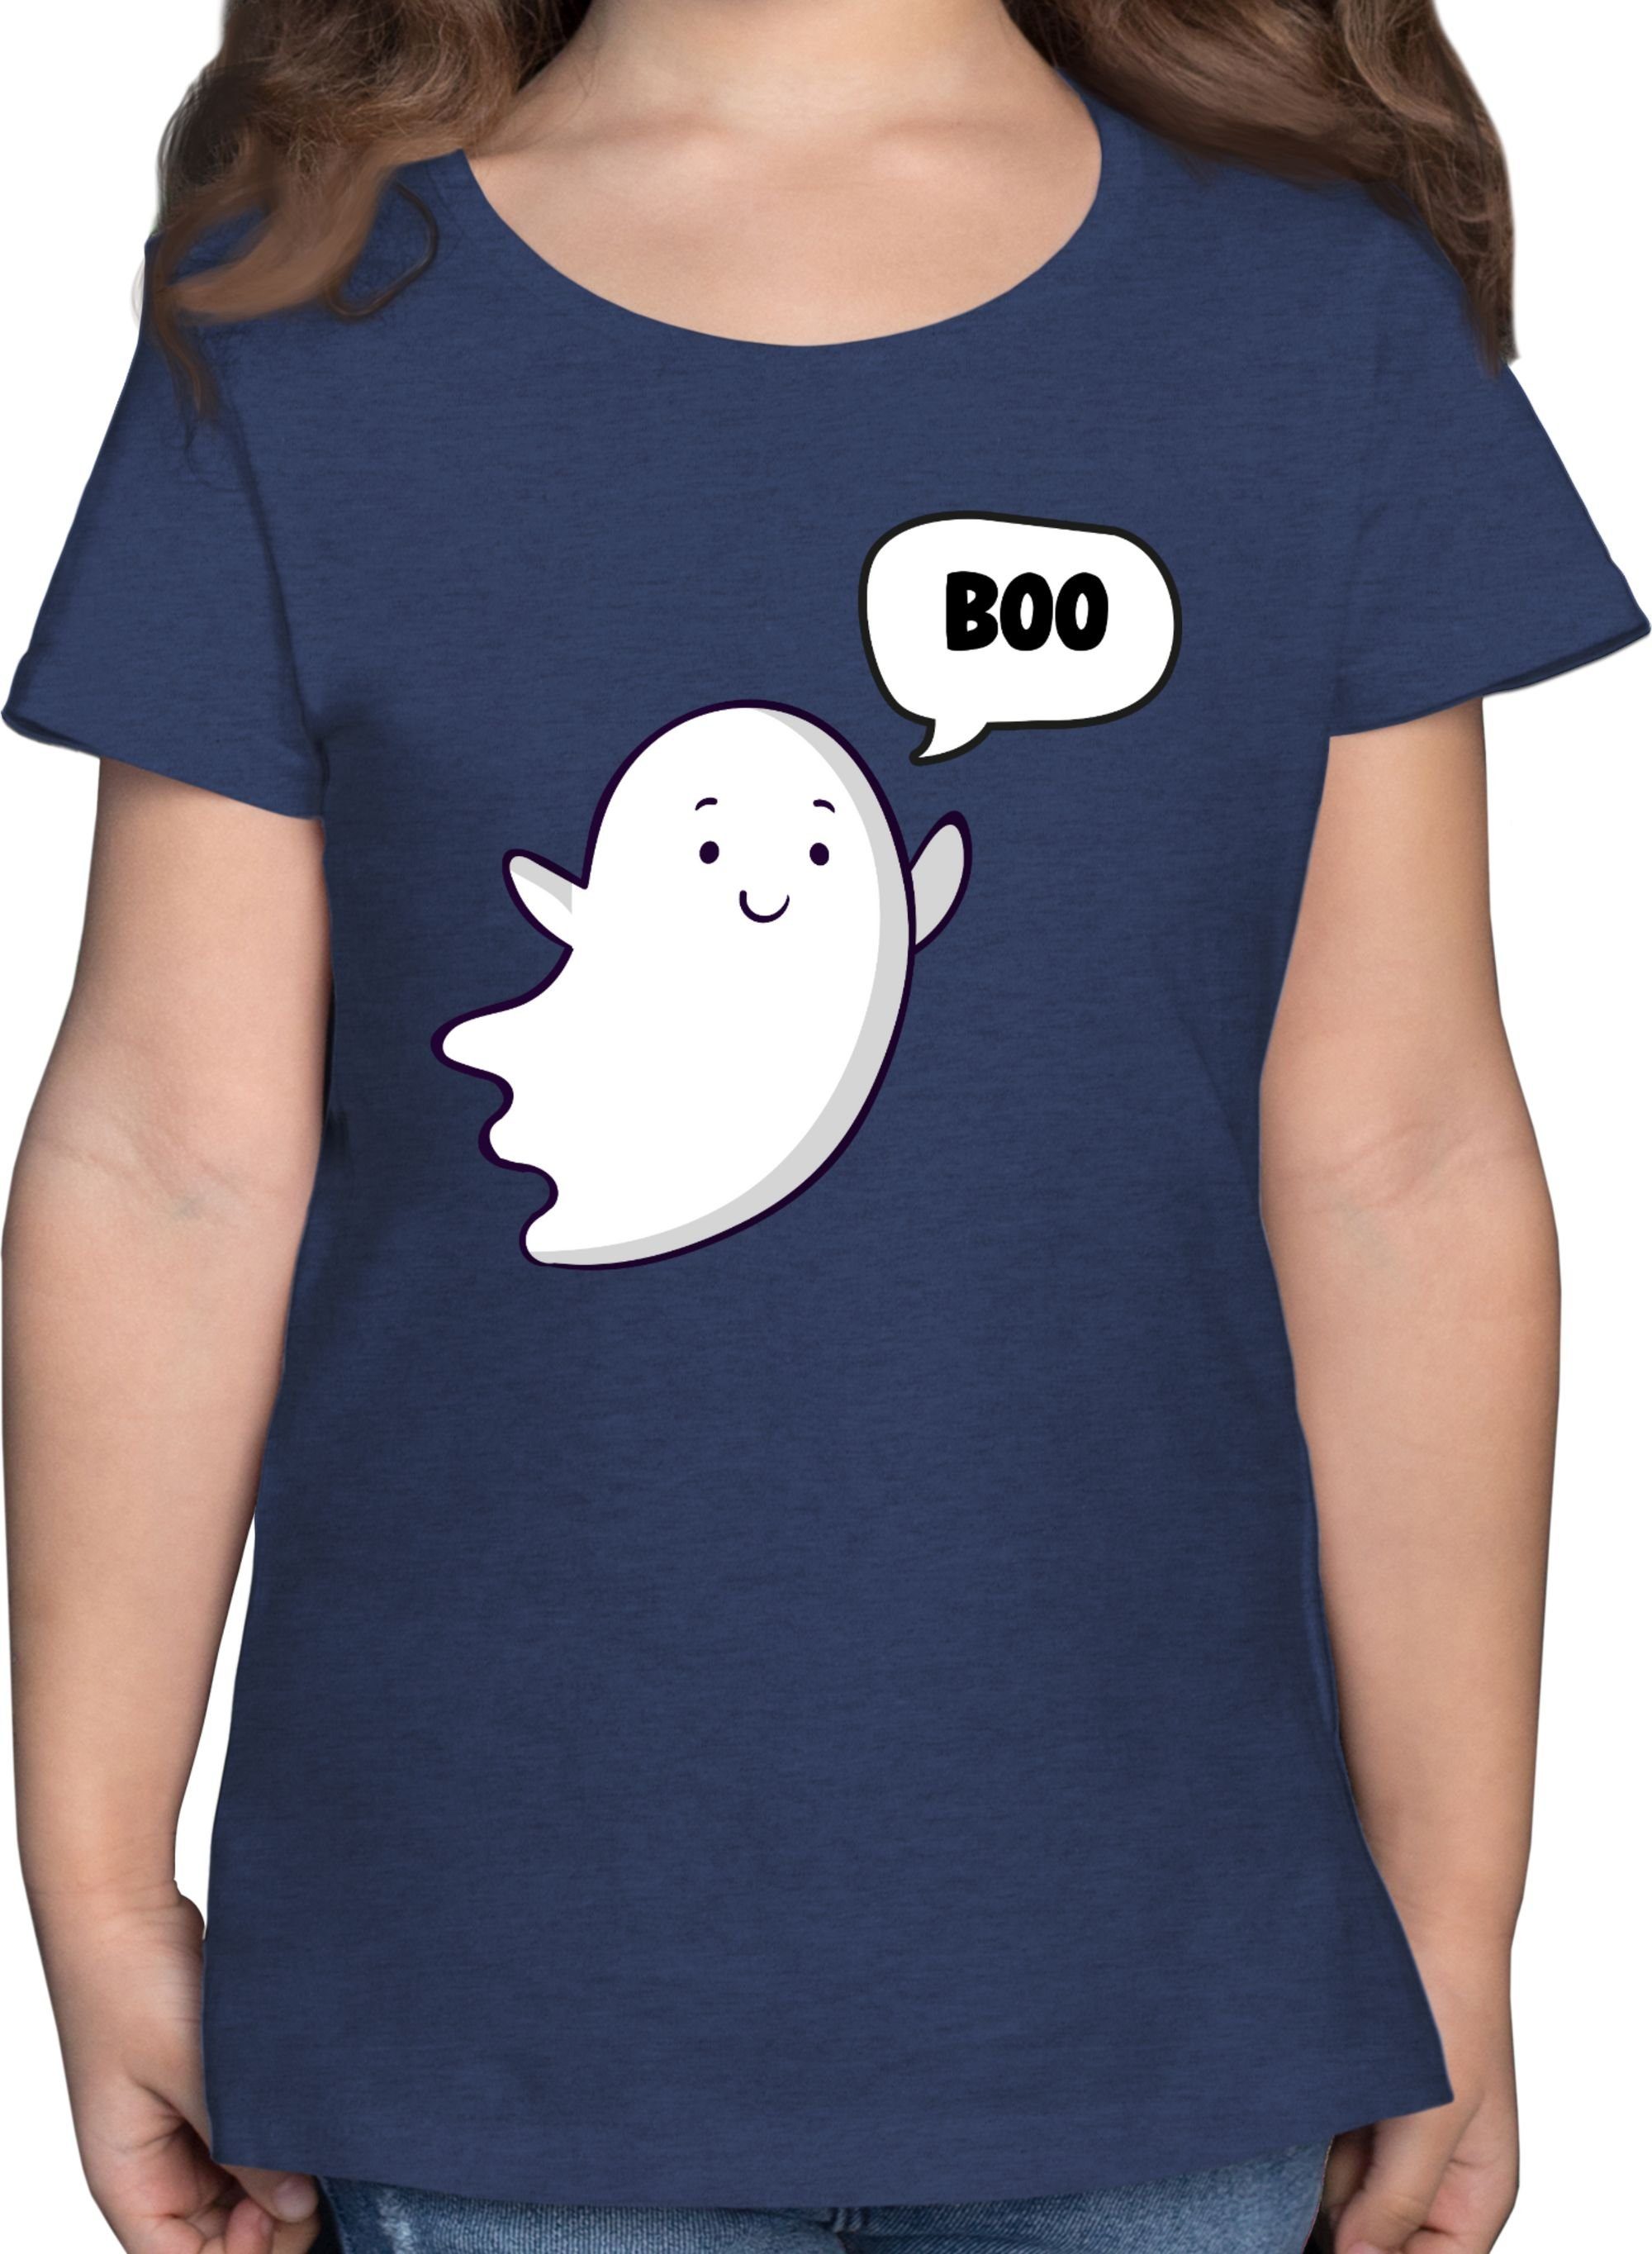 Shirtracer T-Shirt Süßer kleiner Geist Geister Gespenst Ghost Halloween Kostüme für Kinder 01 Dunkelblau Meliert